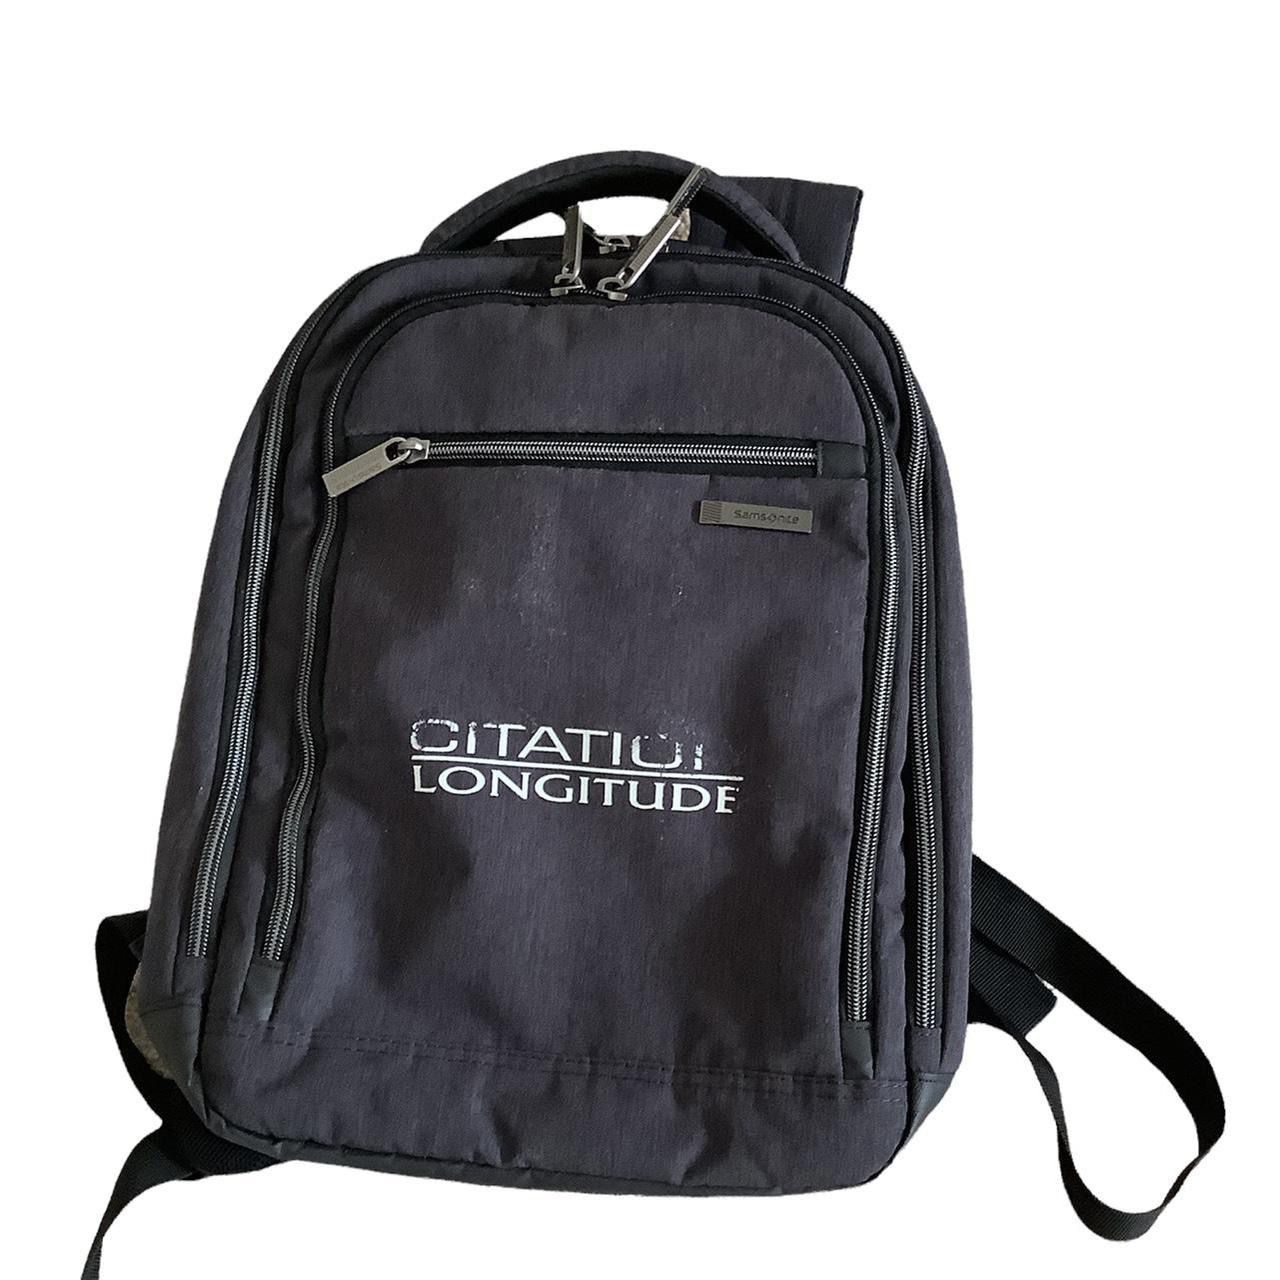 Citation Longitude Backpack